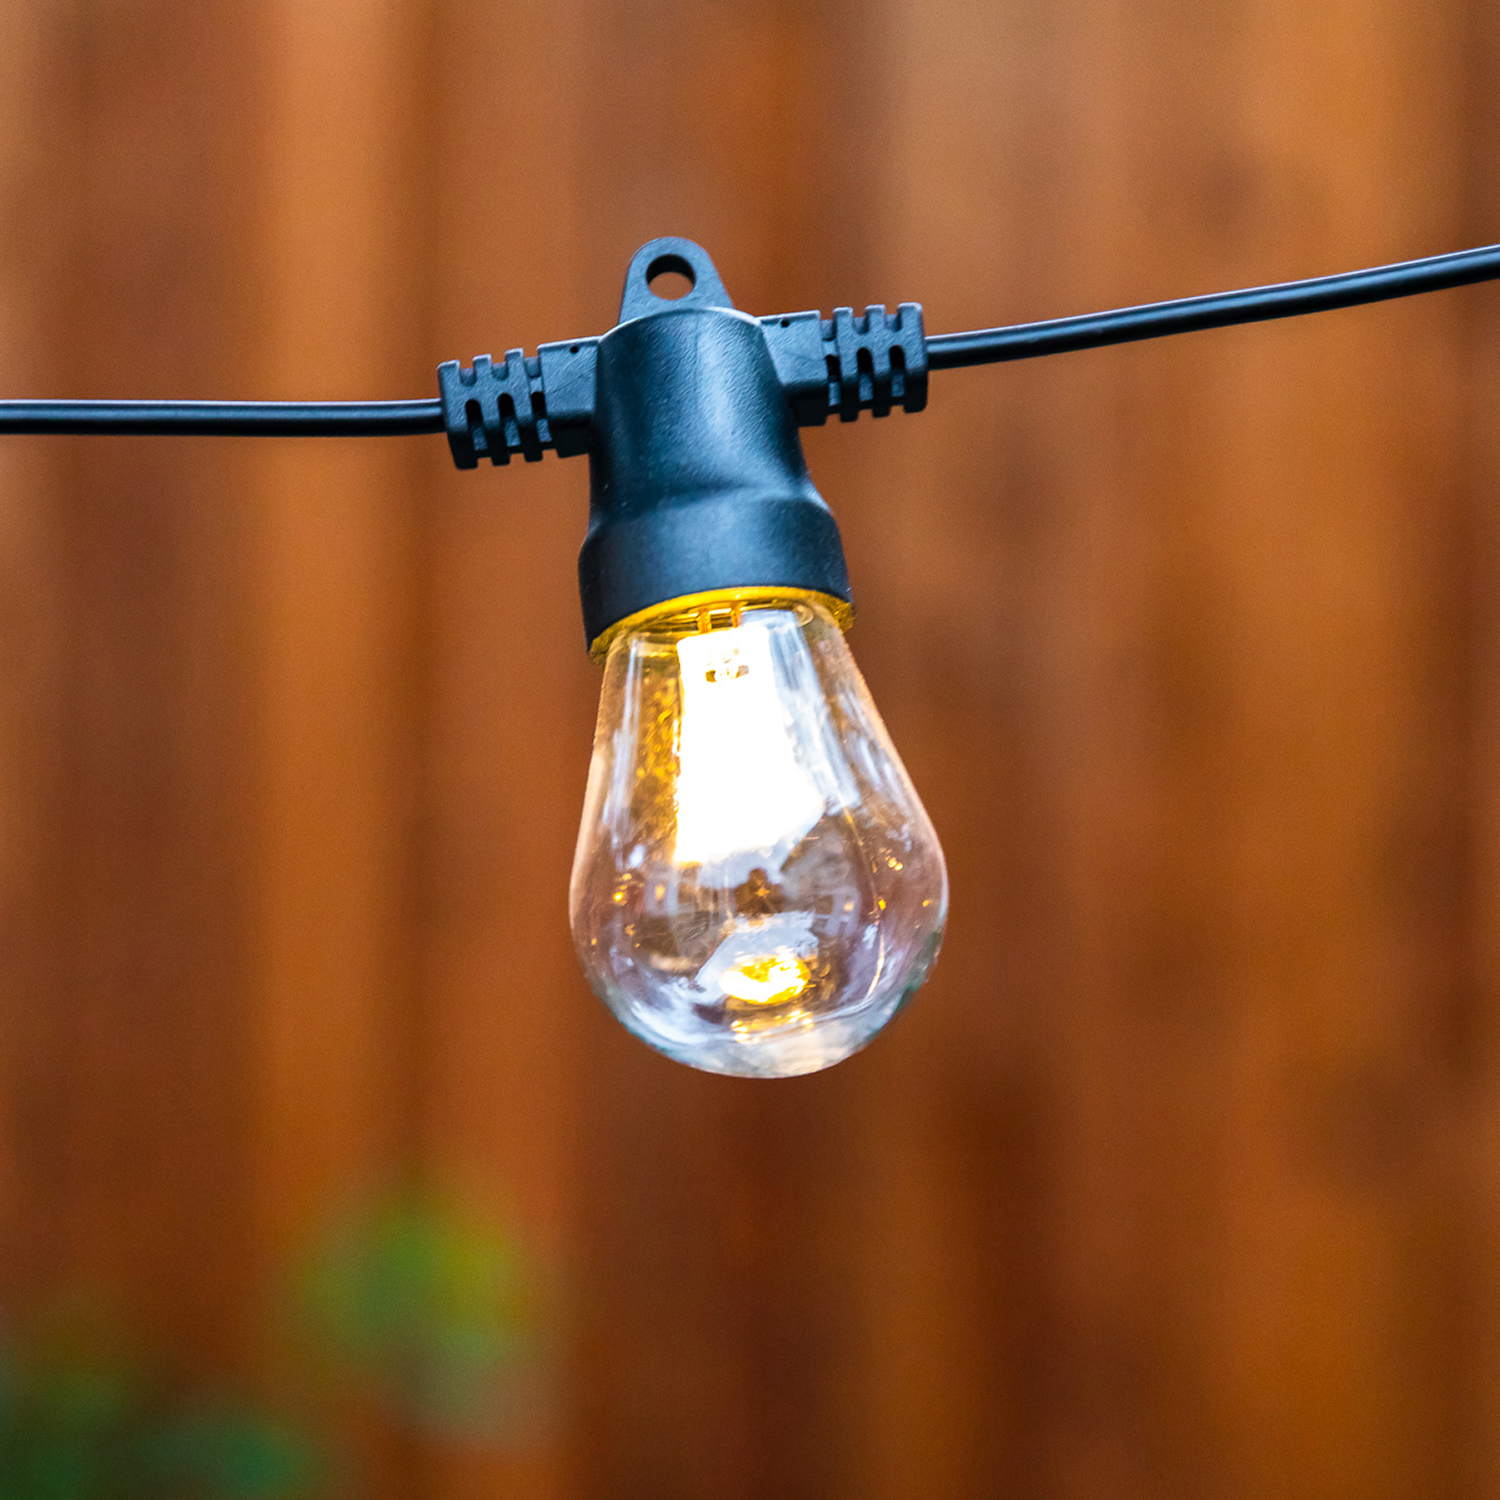 luminar outdoor 20 ft 10 bulb outdoor solar string lights